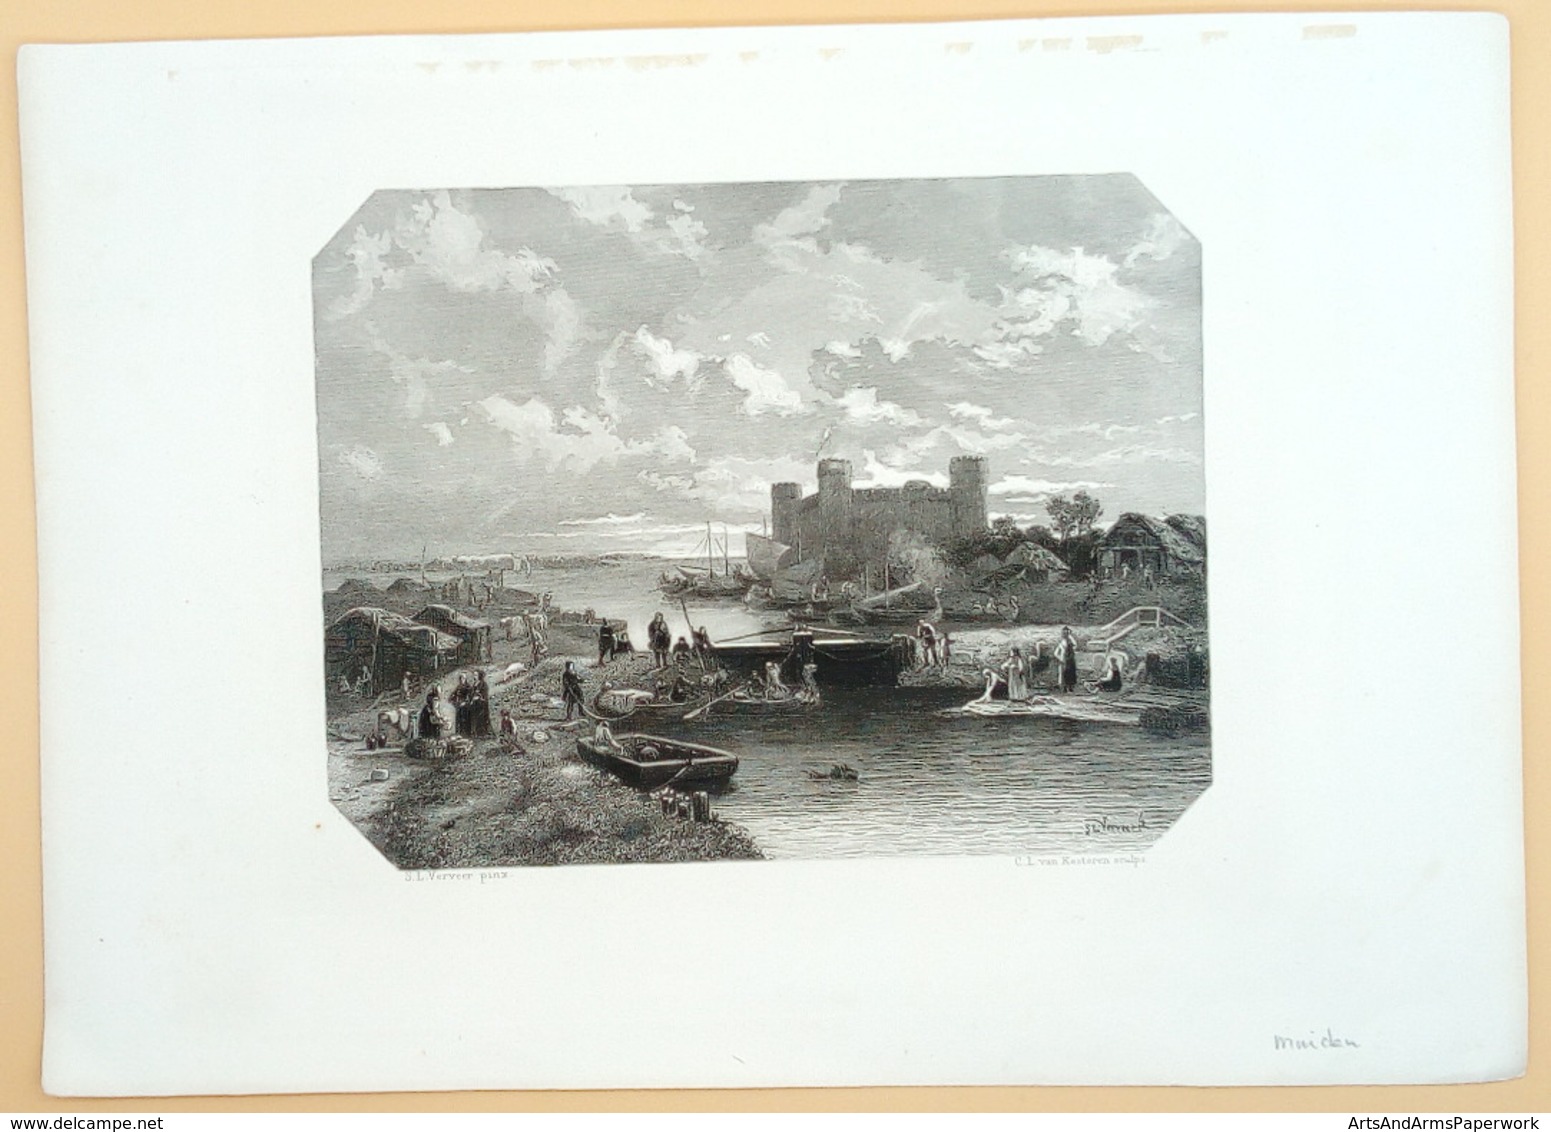 Muiden/ Muiden (NL), 1869, Kesteren, Verveer - Art